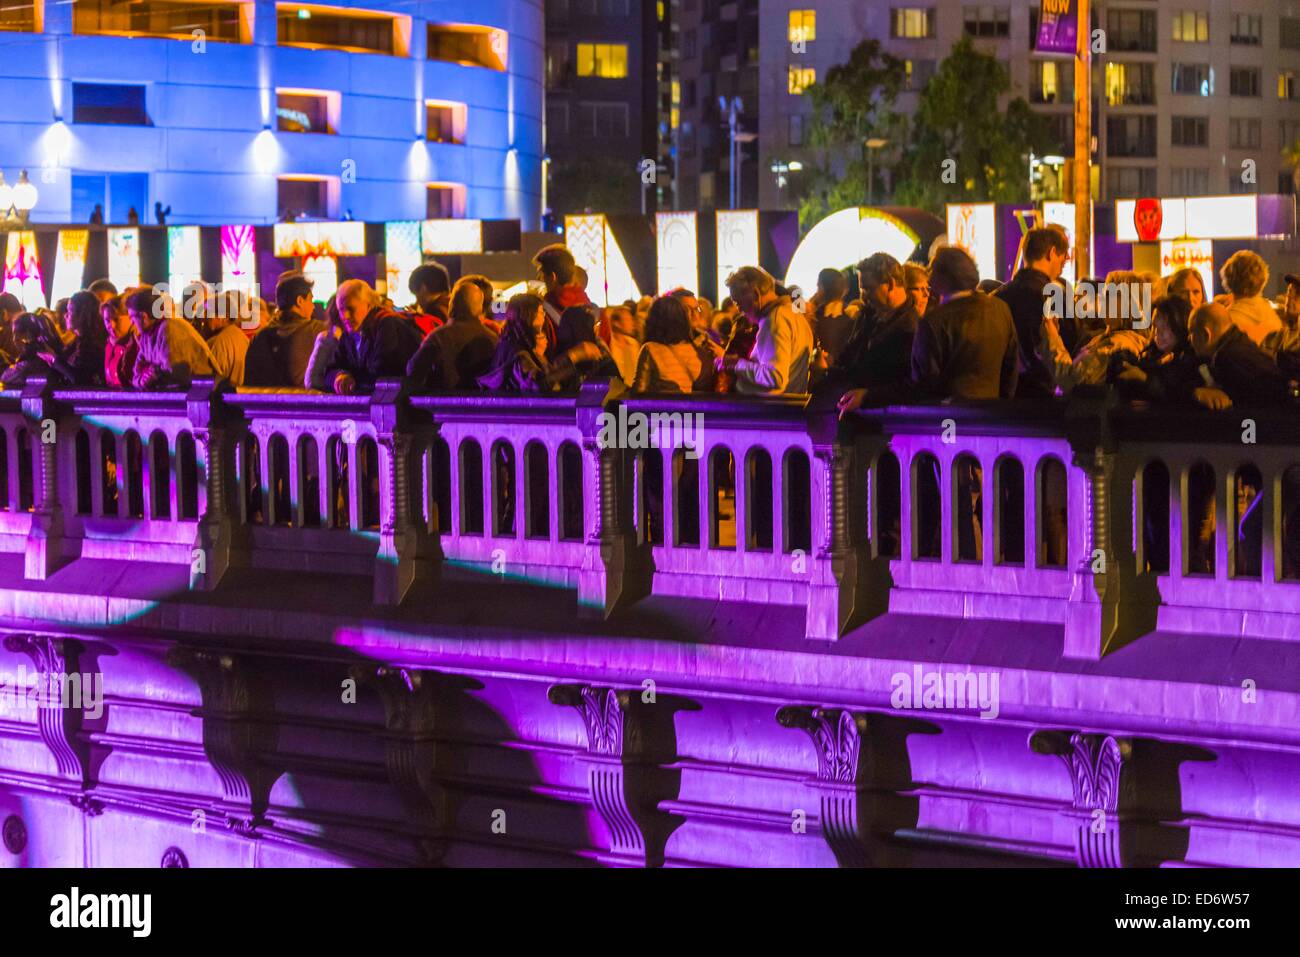 Brücke Melbourne Farbe Lichter auf Prinzessin Brücke über den Yarra River in weißen Nacht Licht Show Brücke in lila, Gr beleuchtet Stockfoto